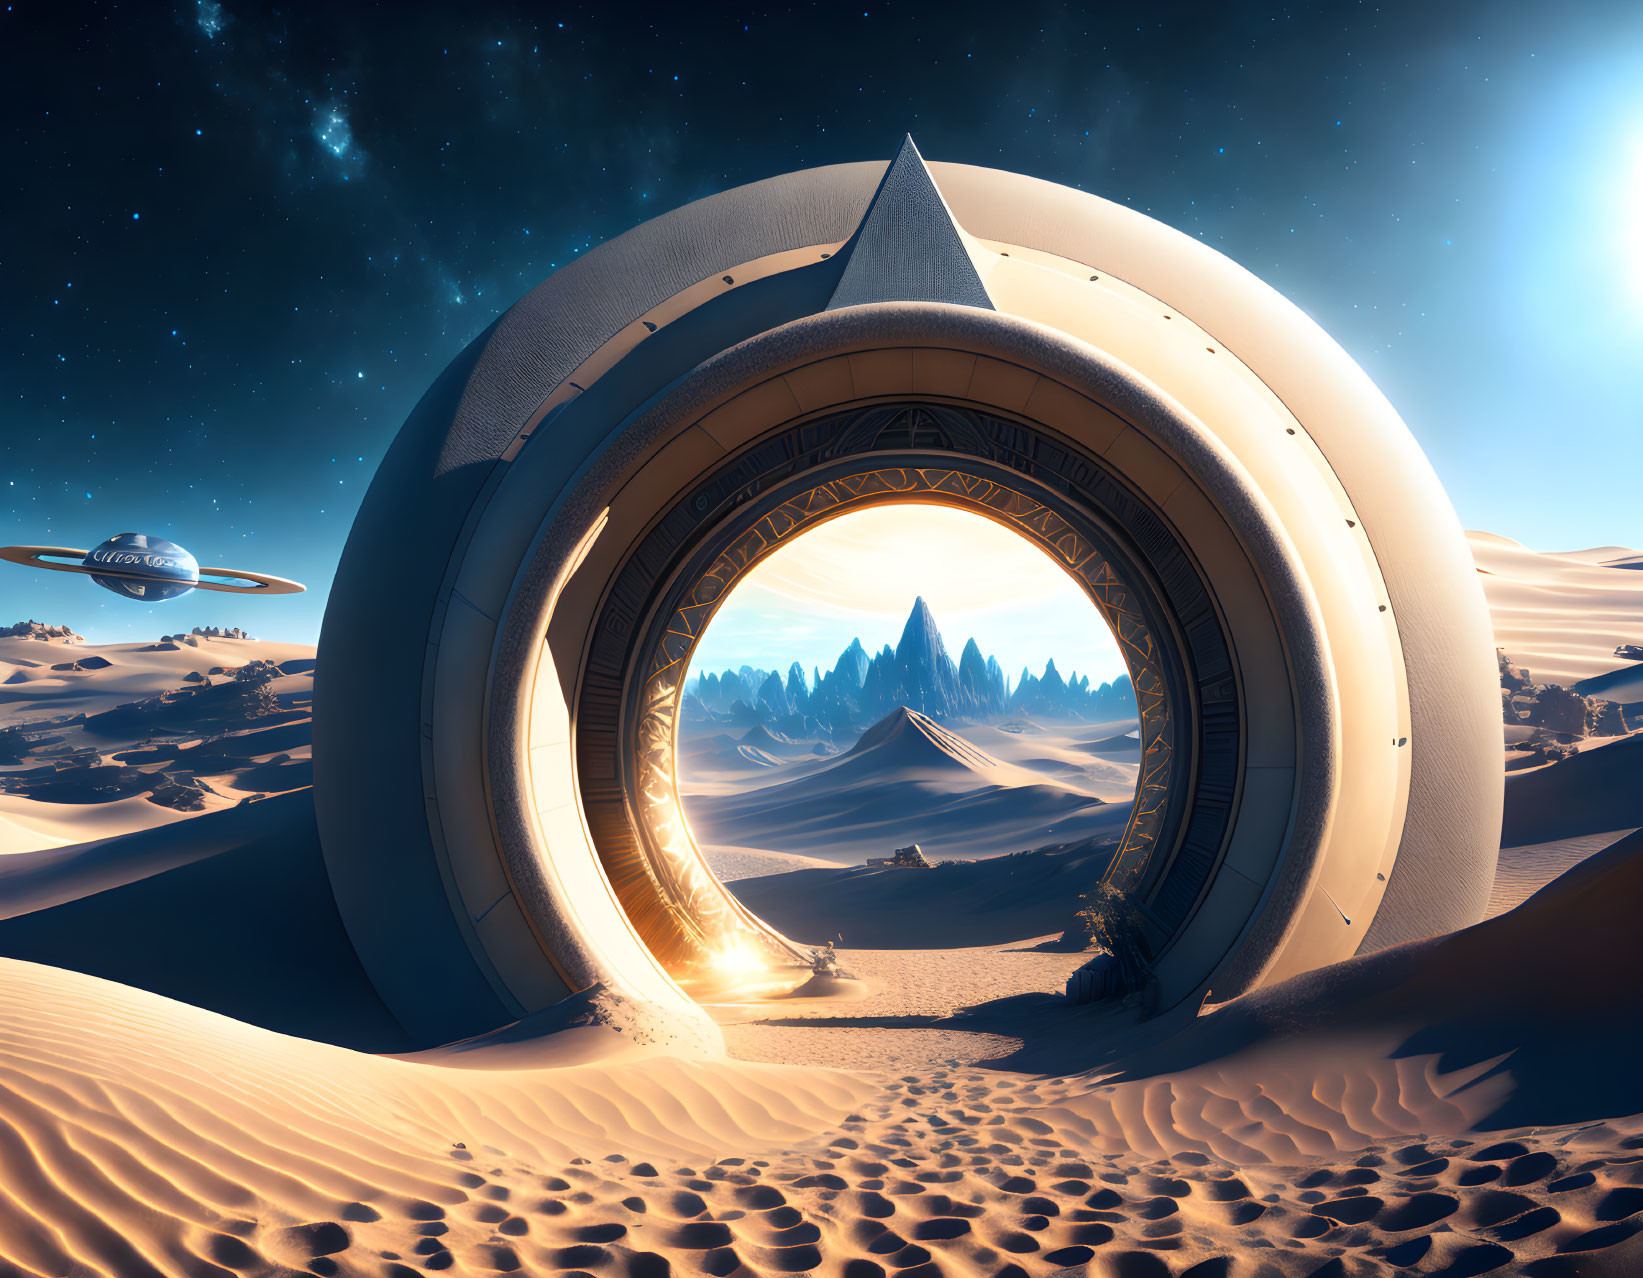 Stargate on Earth.